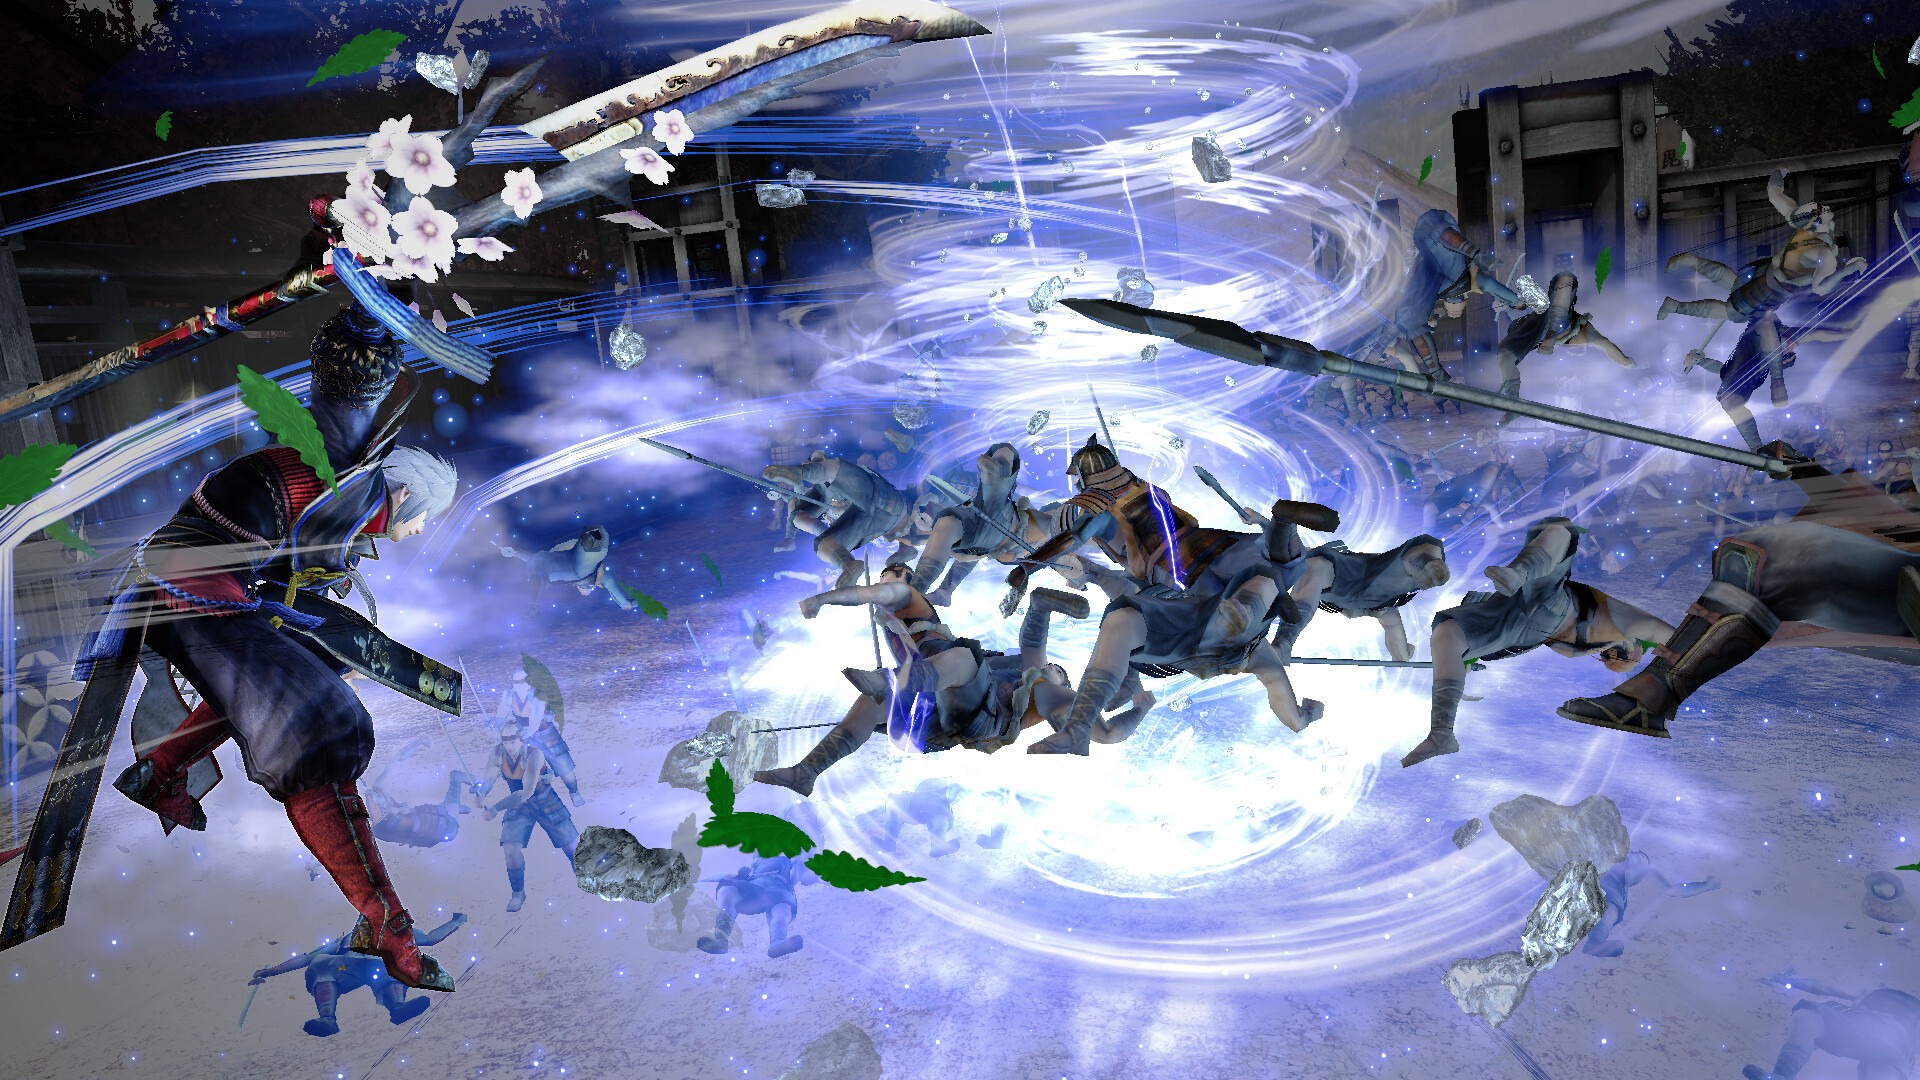 A screenshot from Samurai Warriors 4 DX